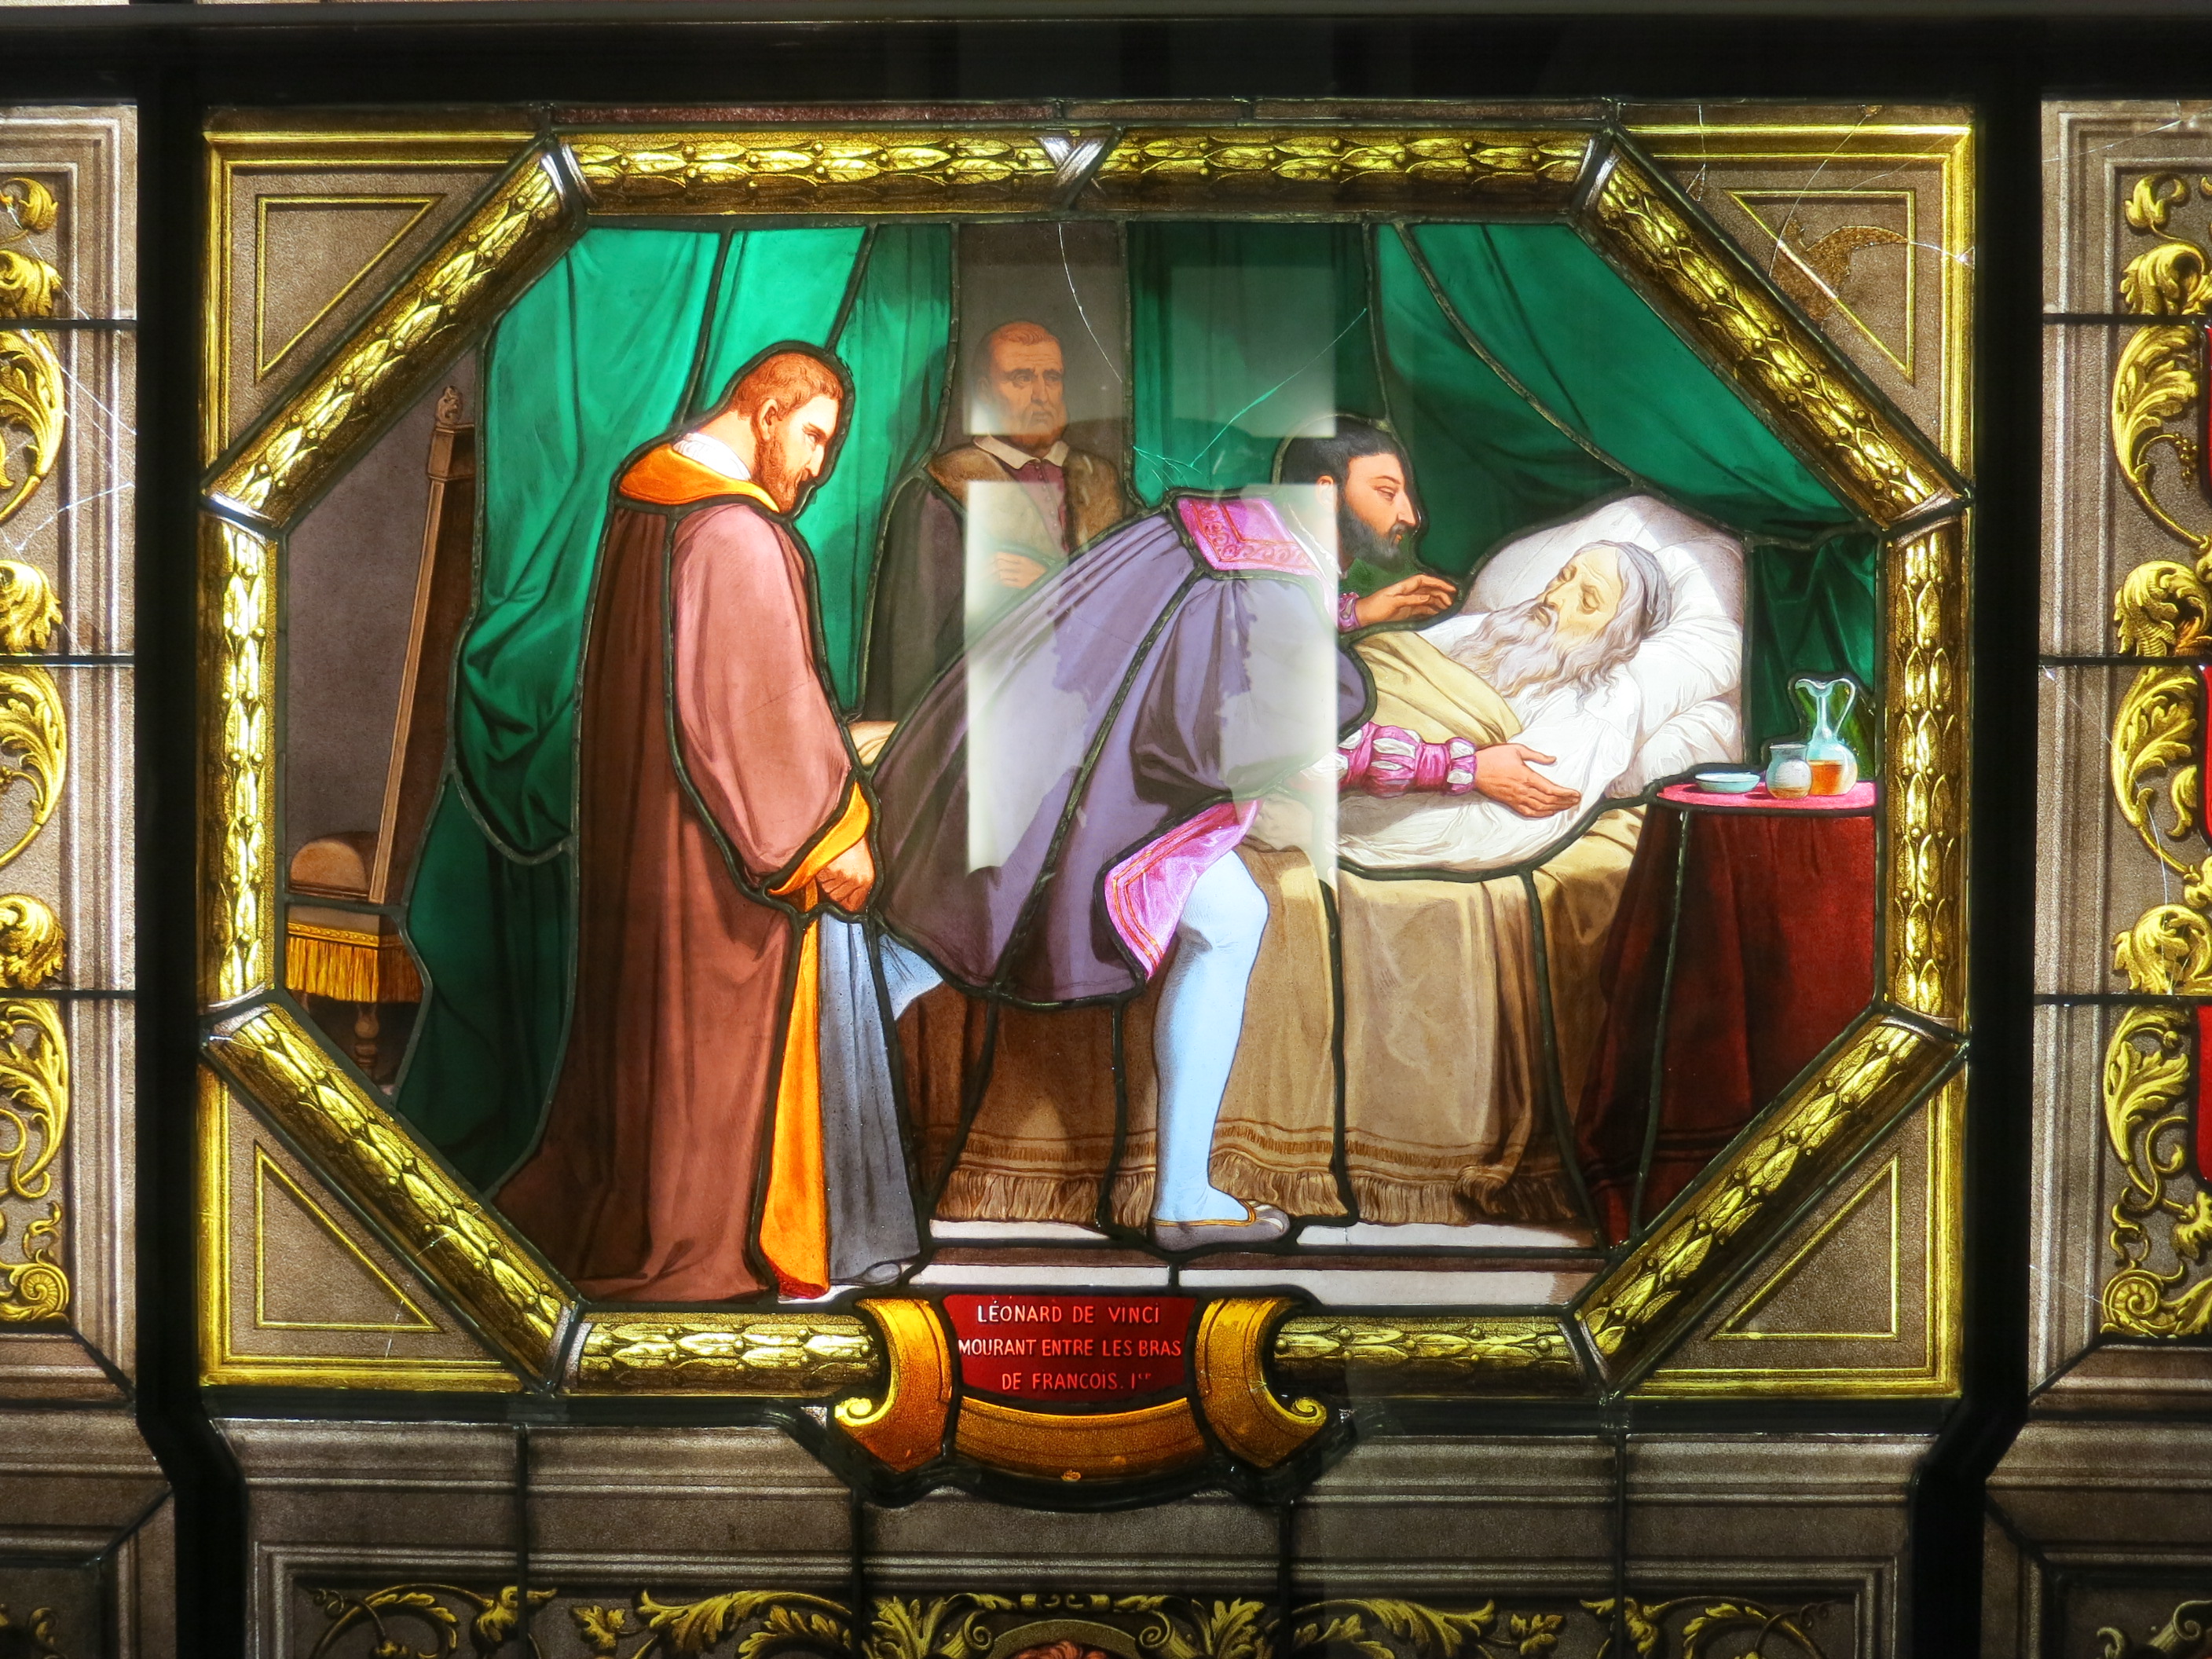 Léonard de Vinci mourant entre les bras de François Ier